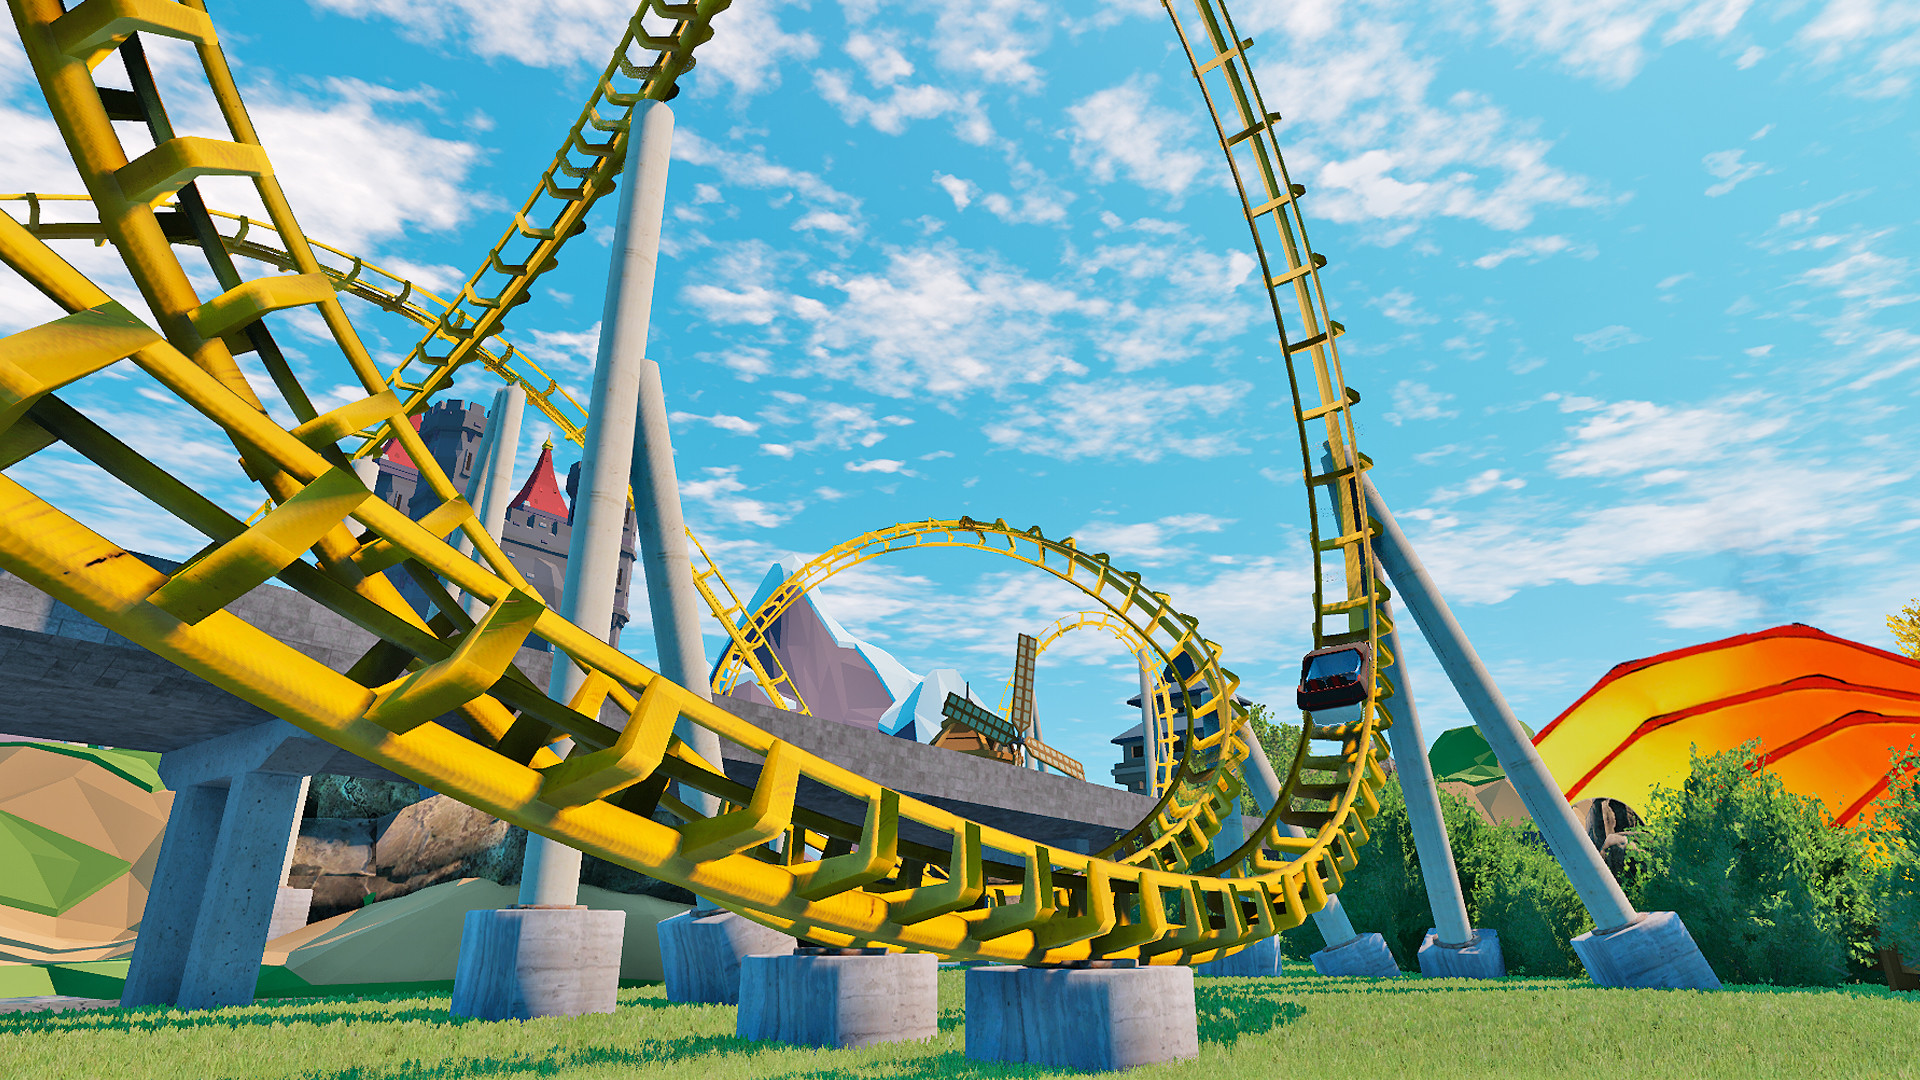 Orlando Theme Park VR - Roller Coaster and Rides a Steamen